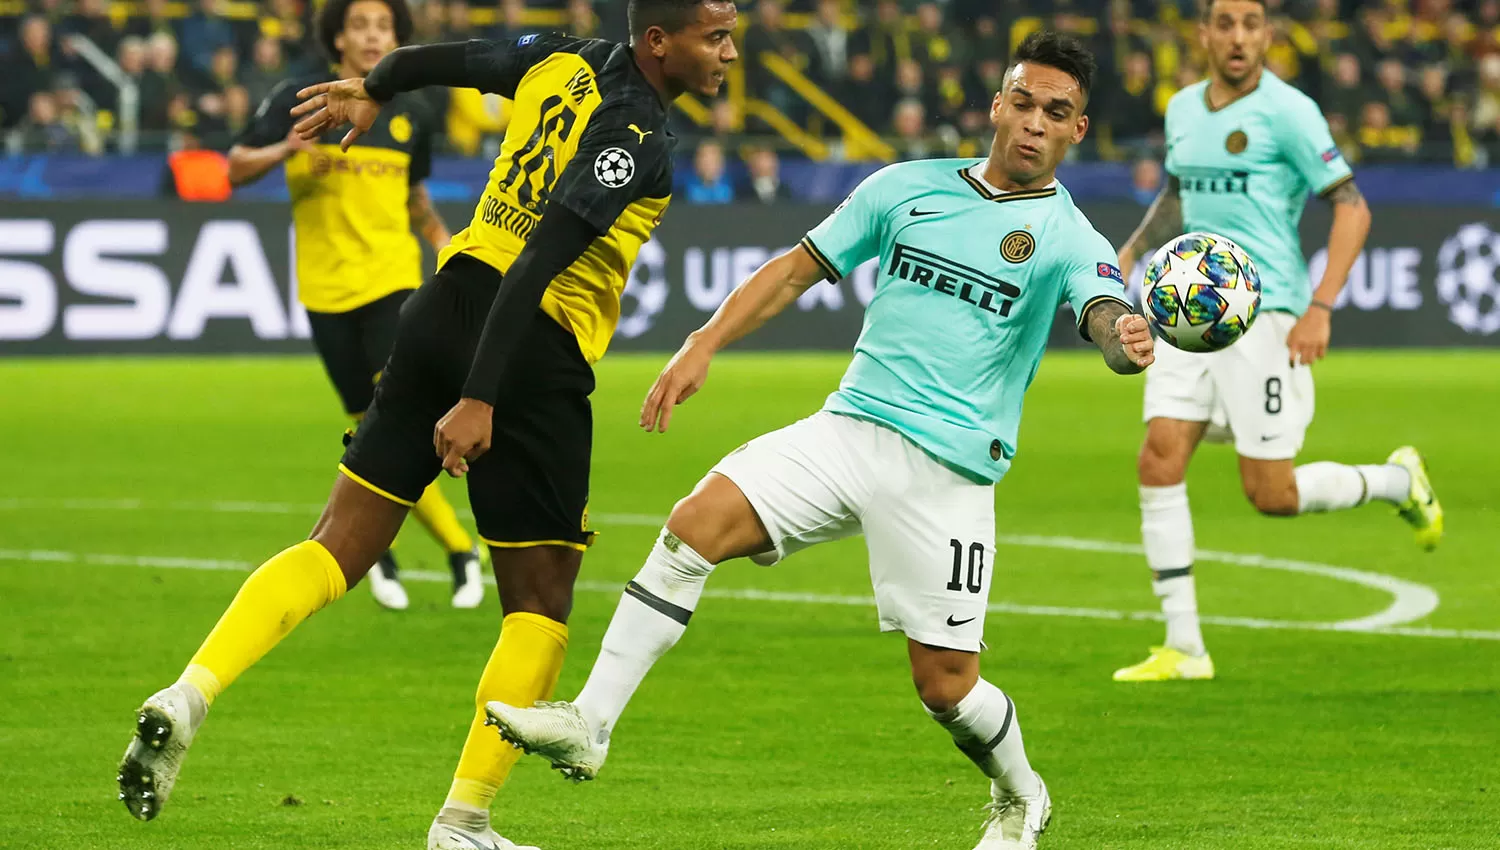 Lautaro Martínez abrió el marcador en el minuto 5 contra el Borussia. (Reuters)